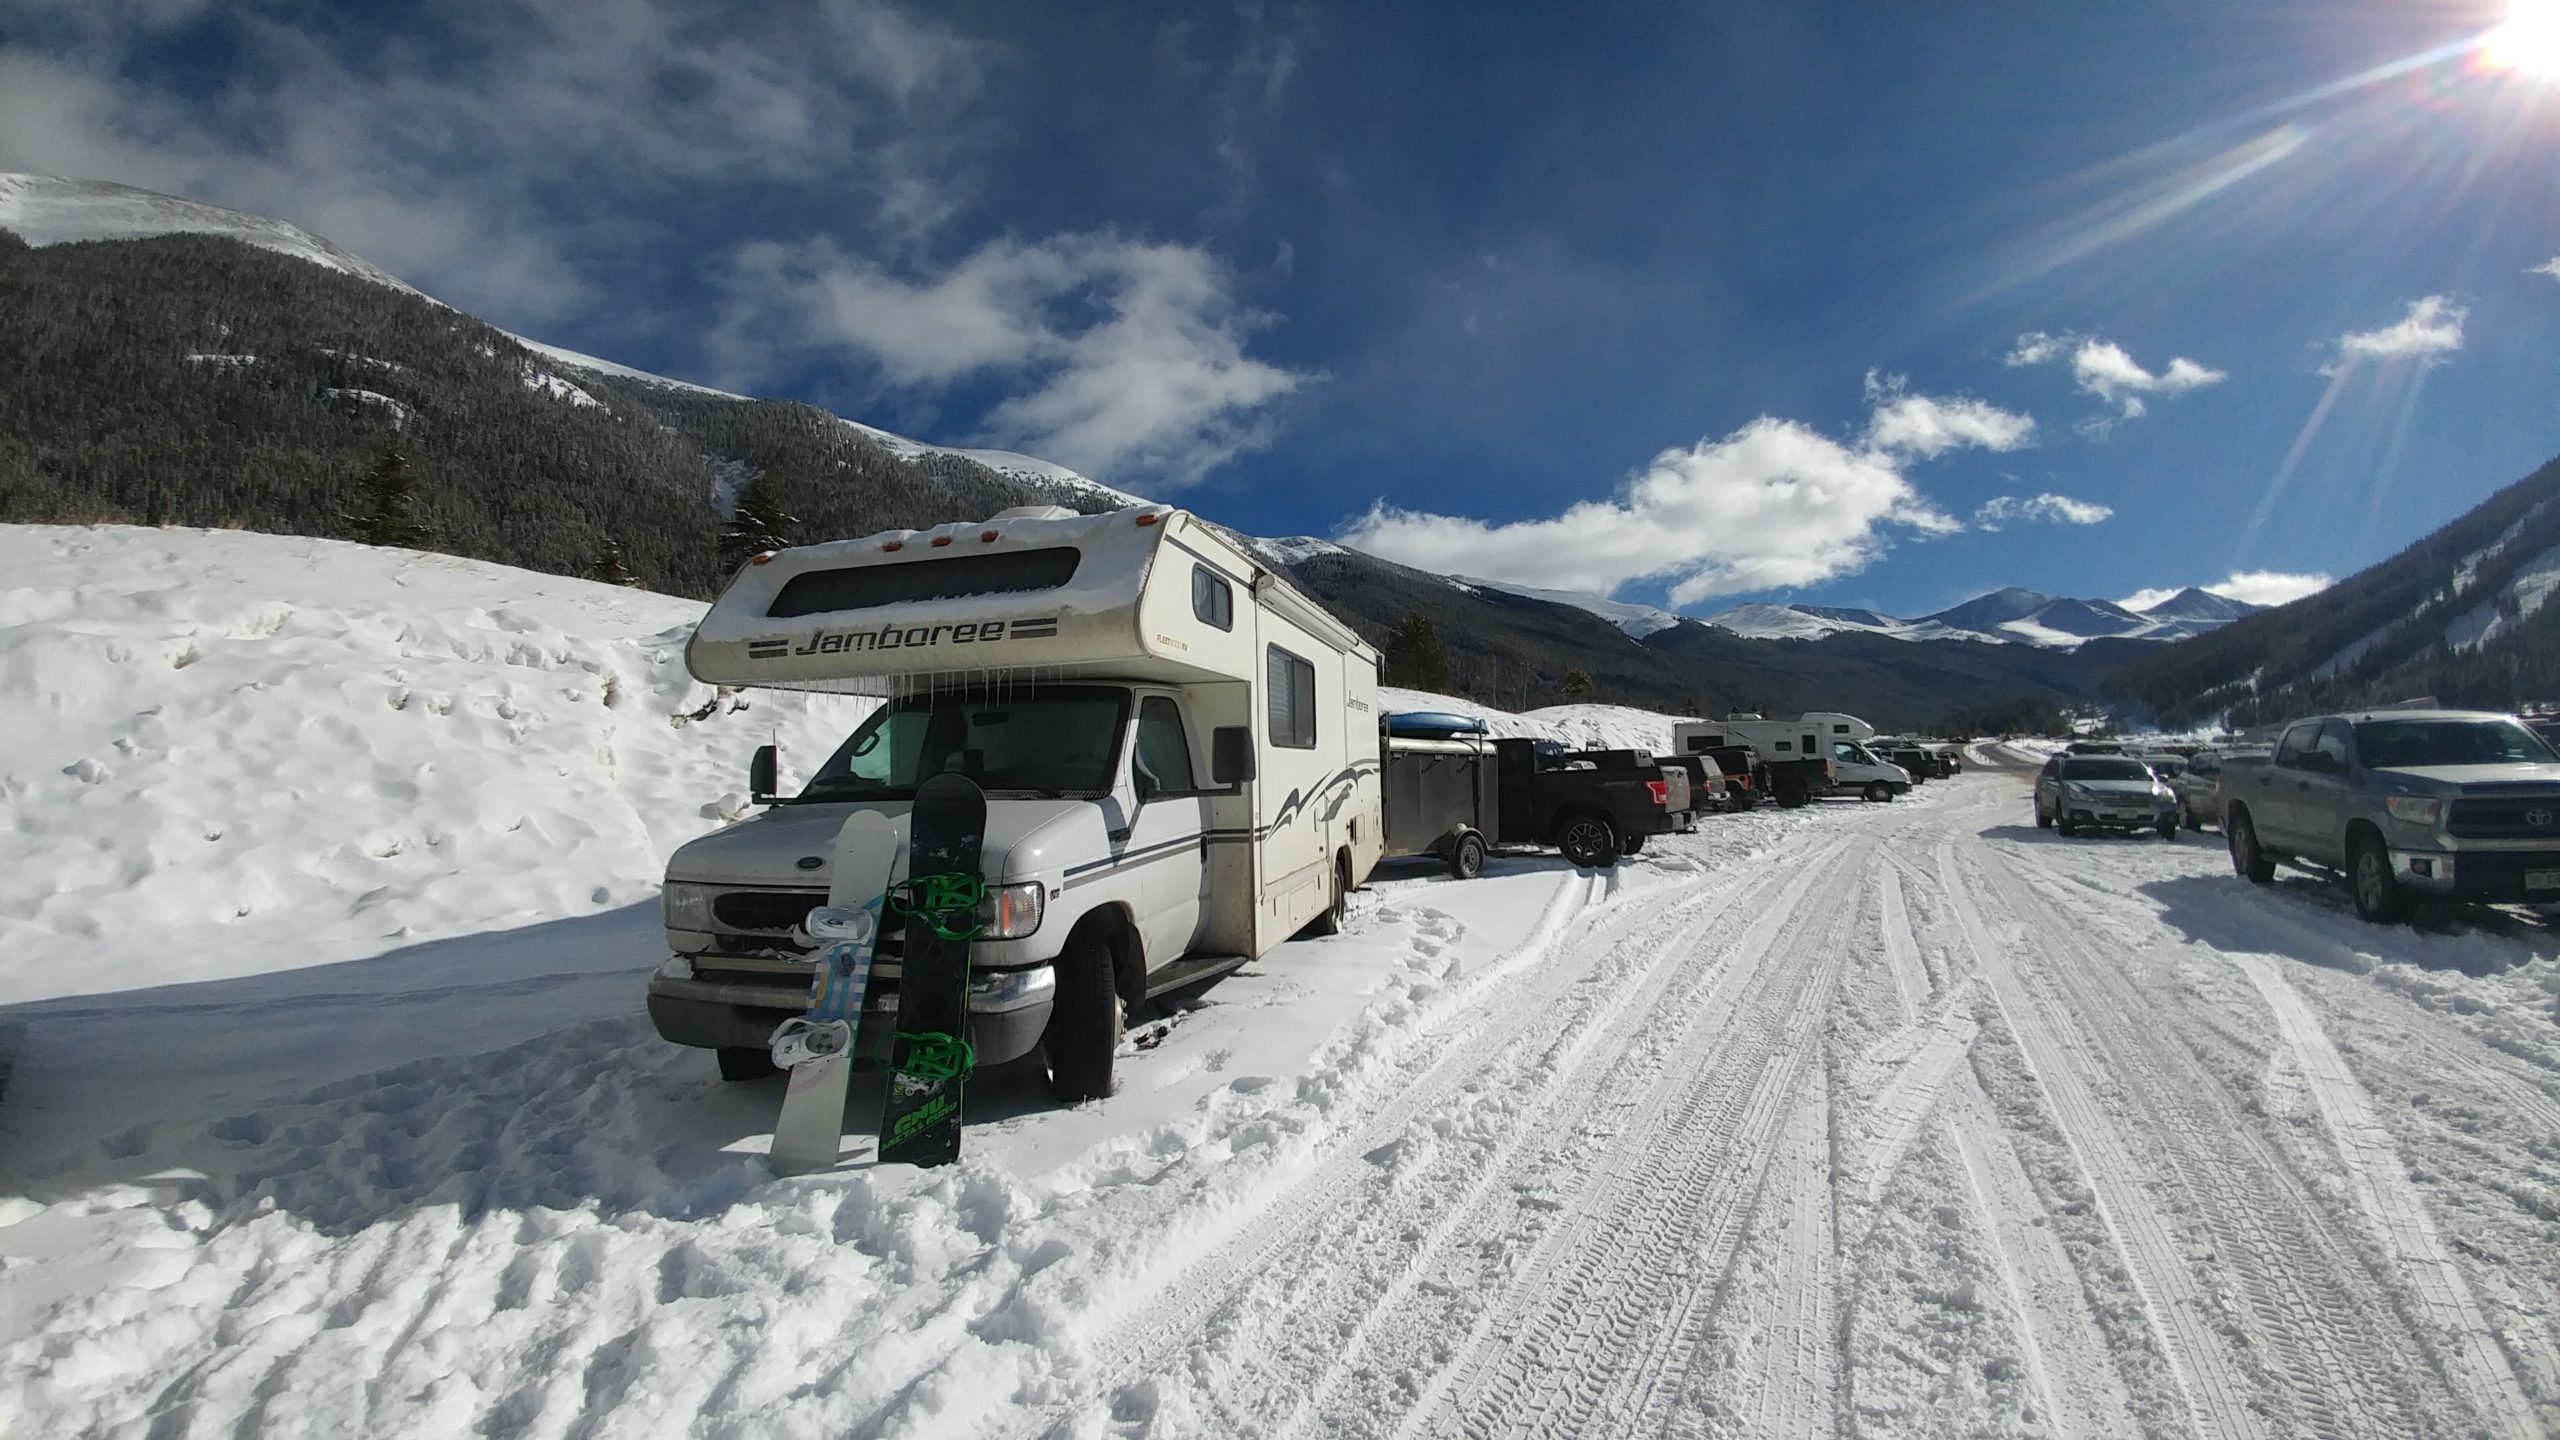 camping at ski resorts